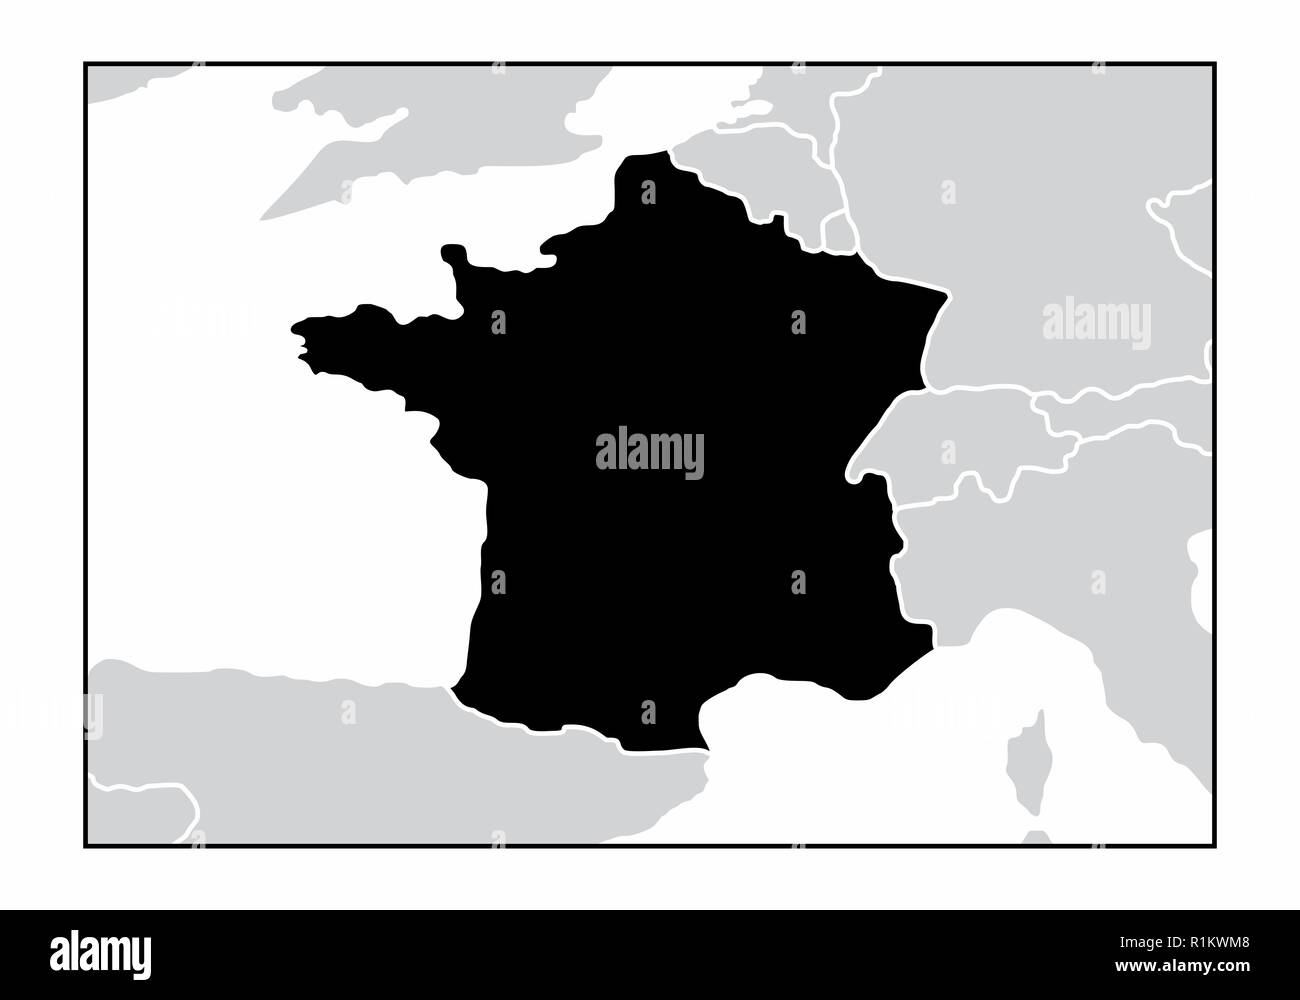 La silhouette sombre de la France la carte dans le continent européen Illustration de Vecteur